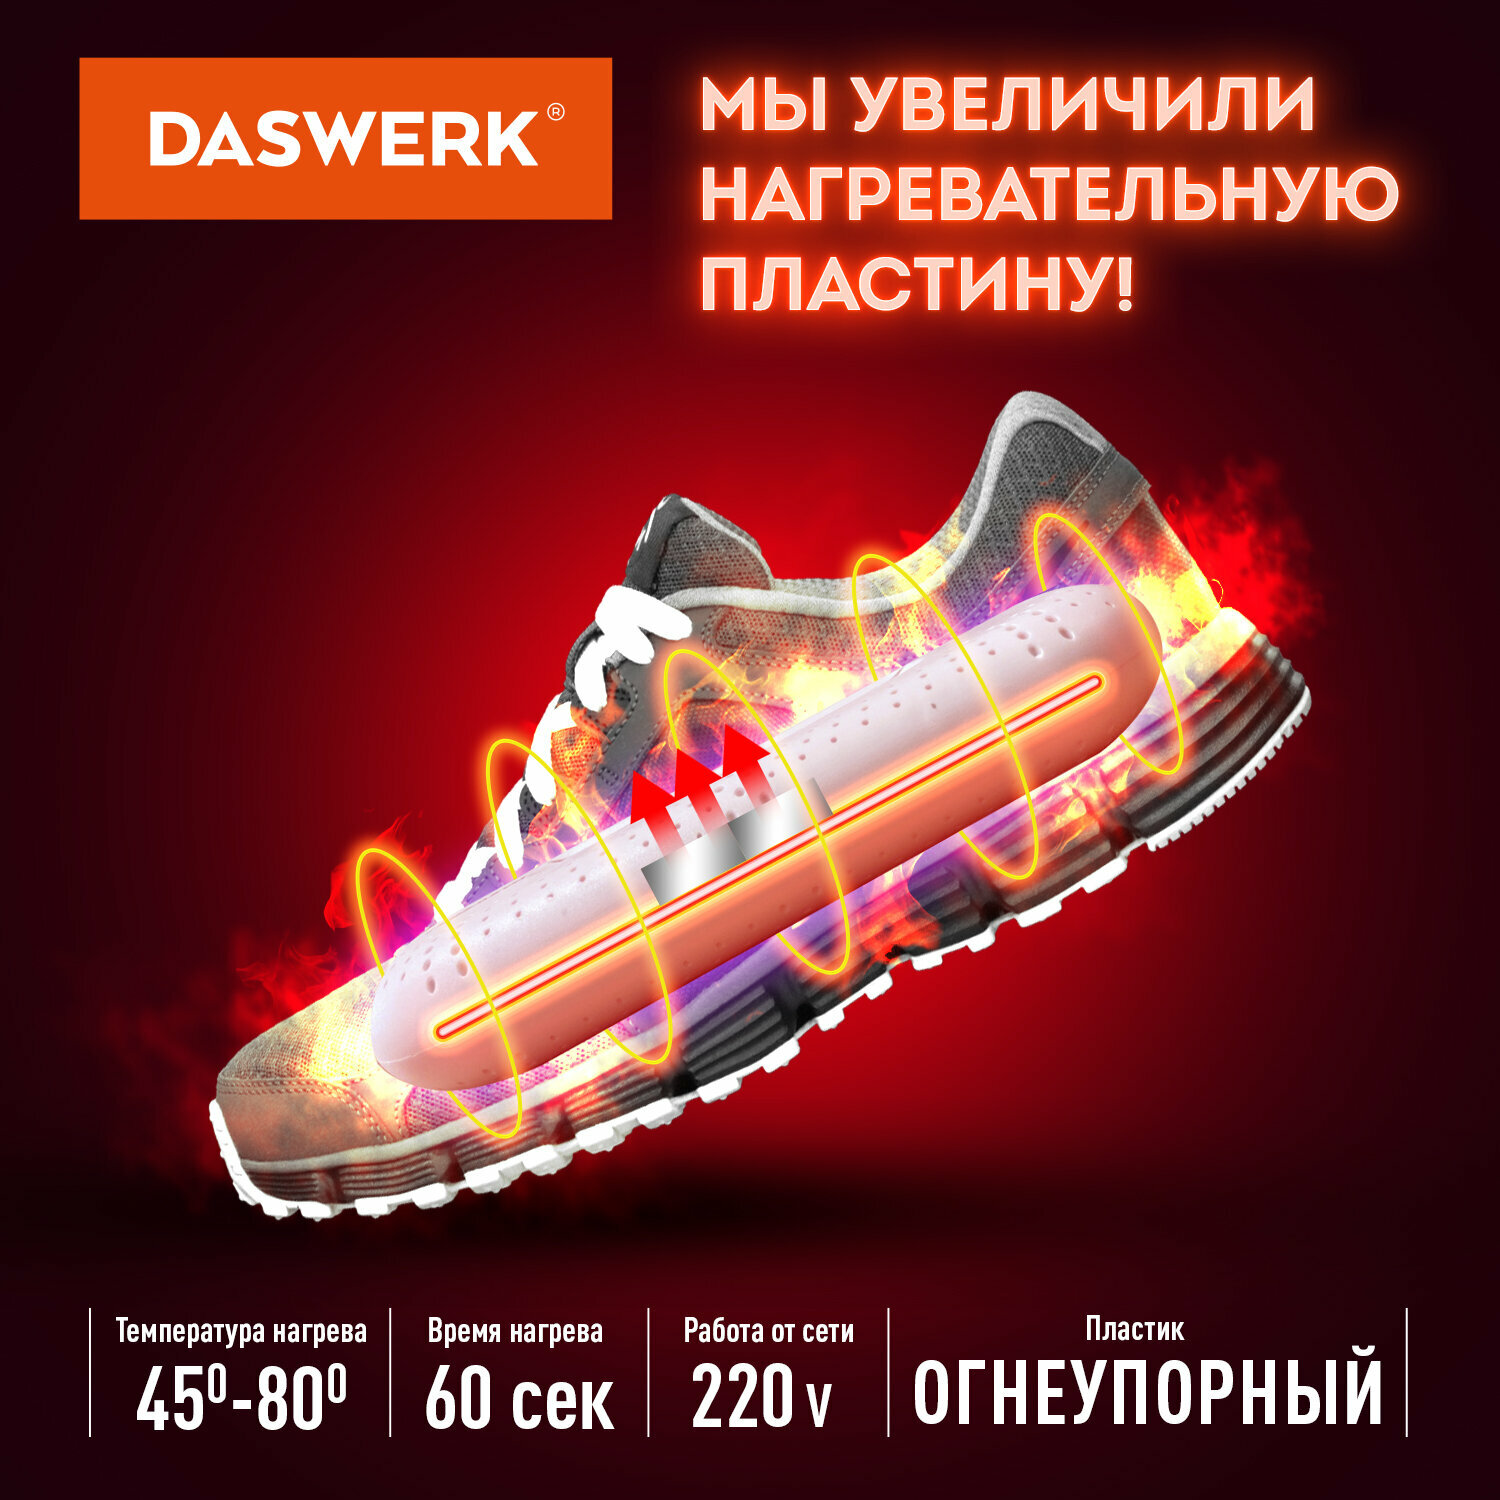 Cушилка для обуви, электрическая (сушка, электросушилка) от запаха с подсветкой, 20 Вт, Daswerk, Sd2, 456195 - фотография № 4